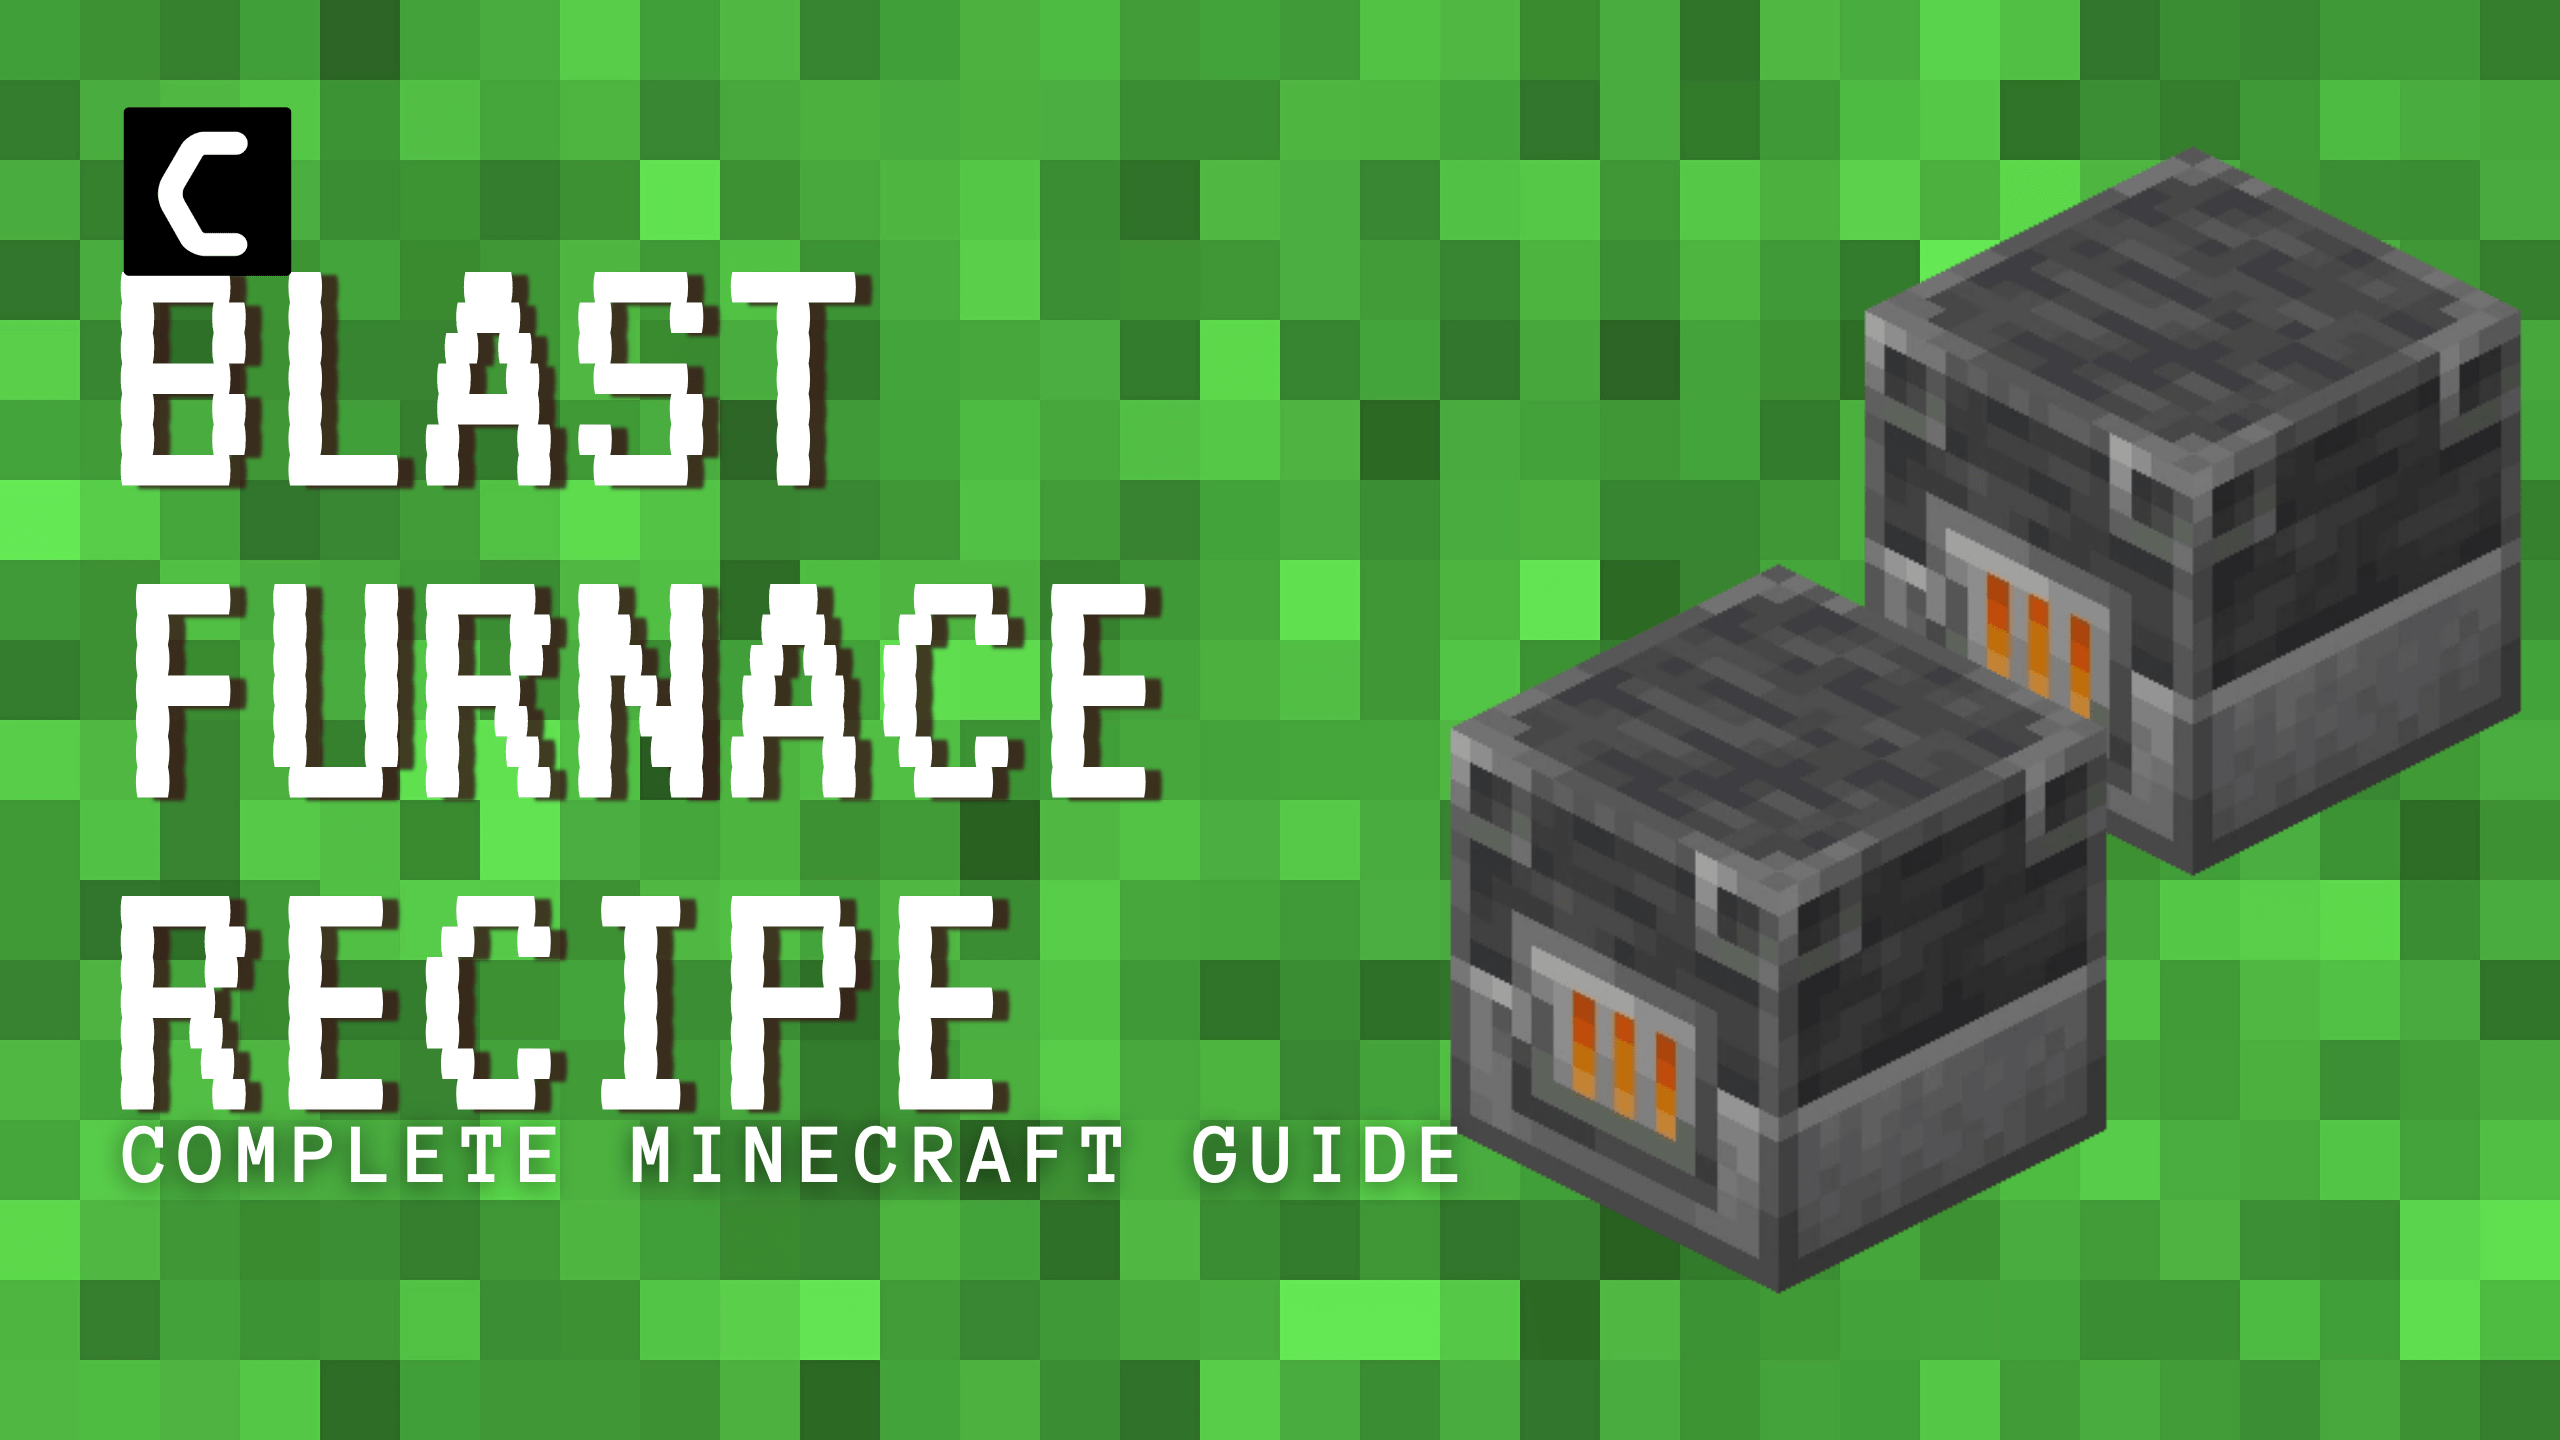 Make Blast Furnace in Minecraft